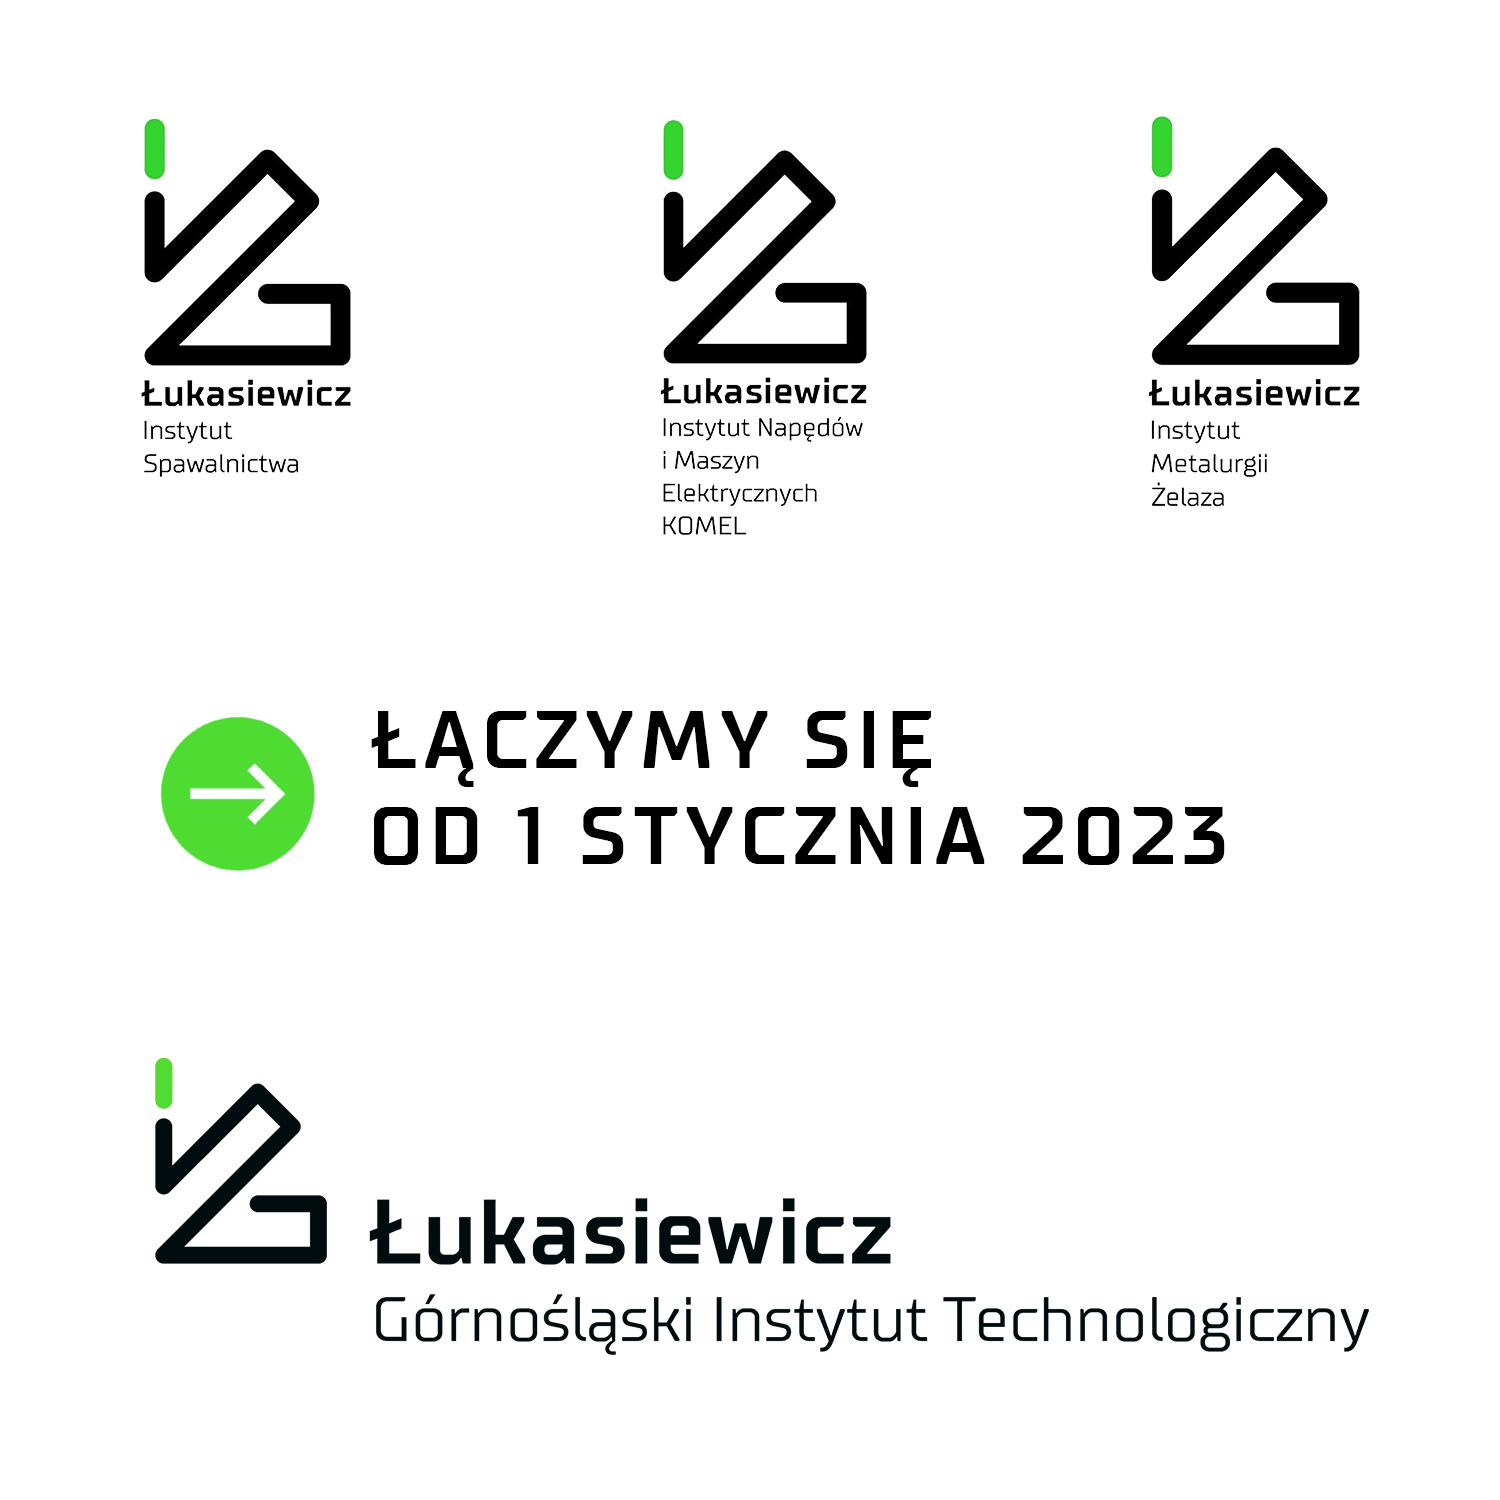 Łukasiewicz – Górnośląski Instytut Technologiczny